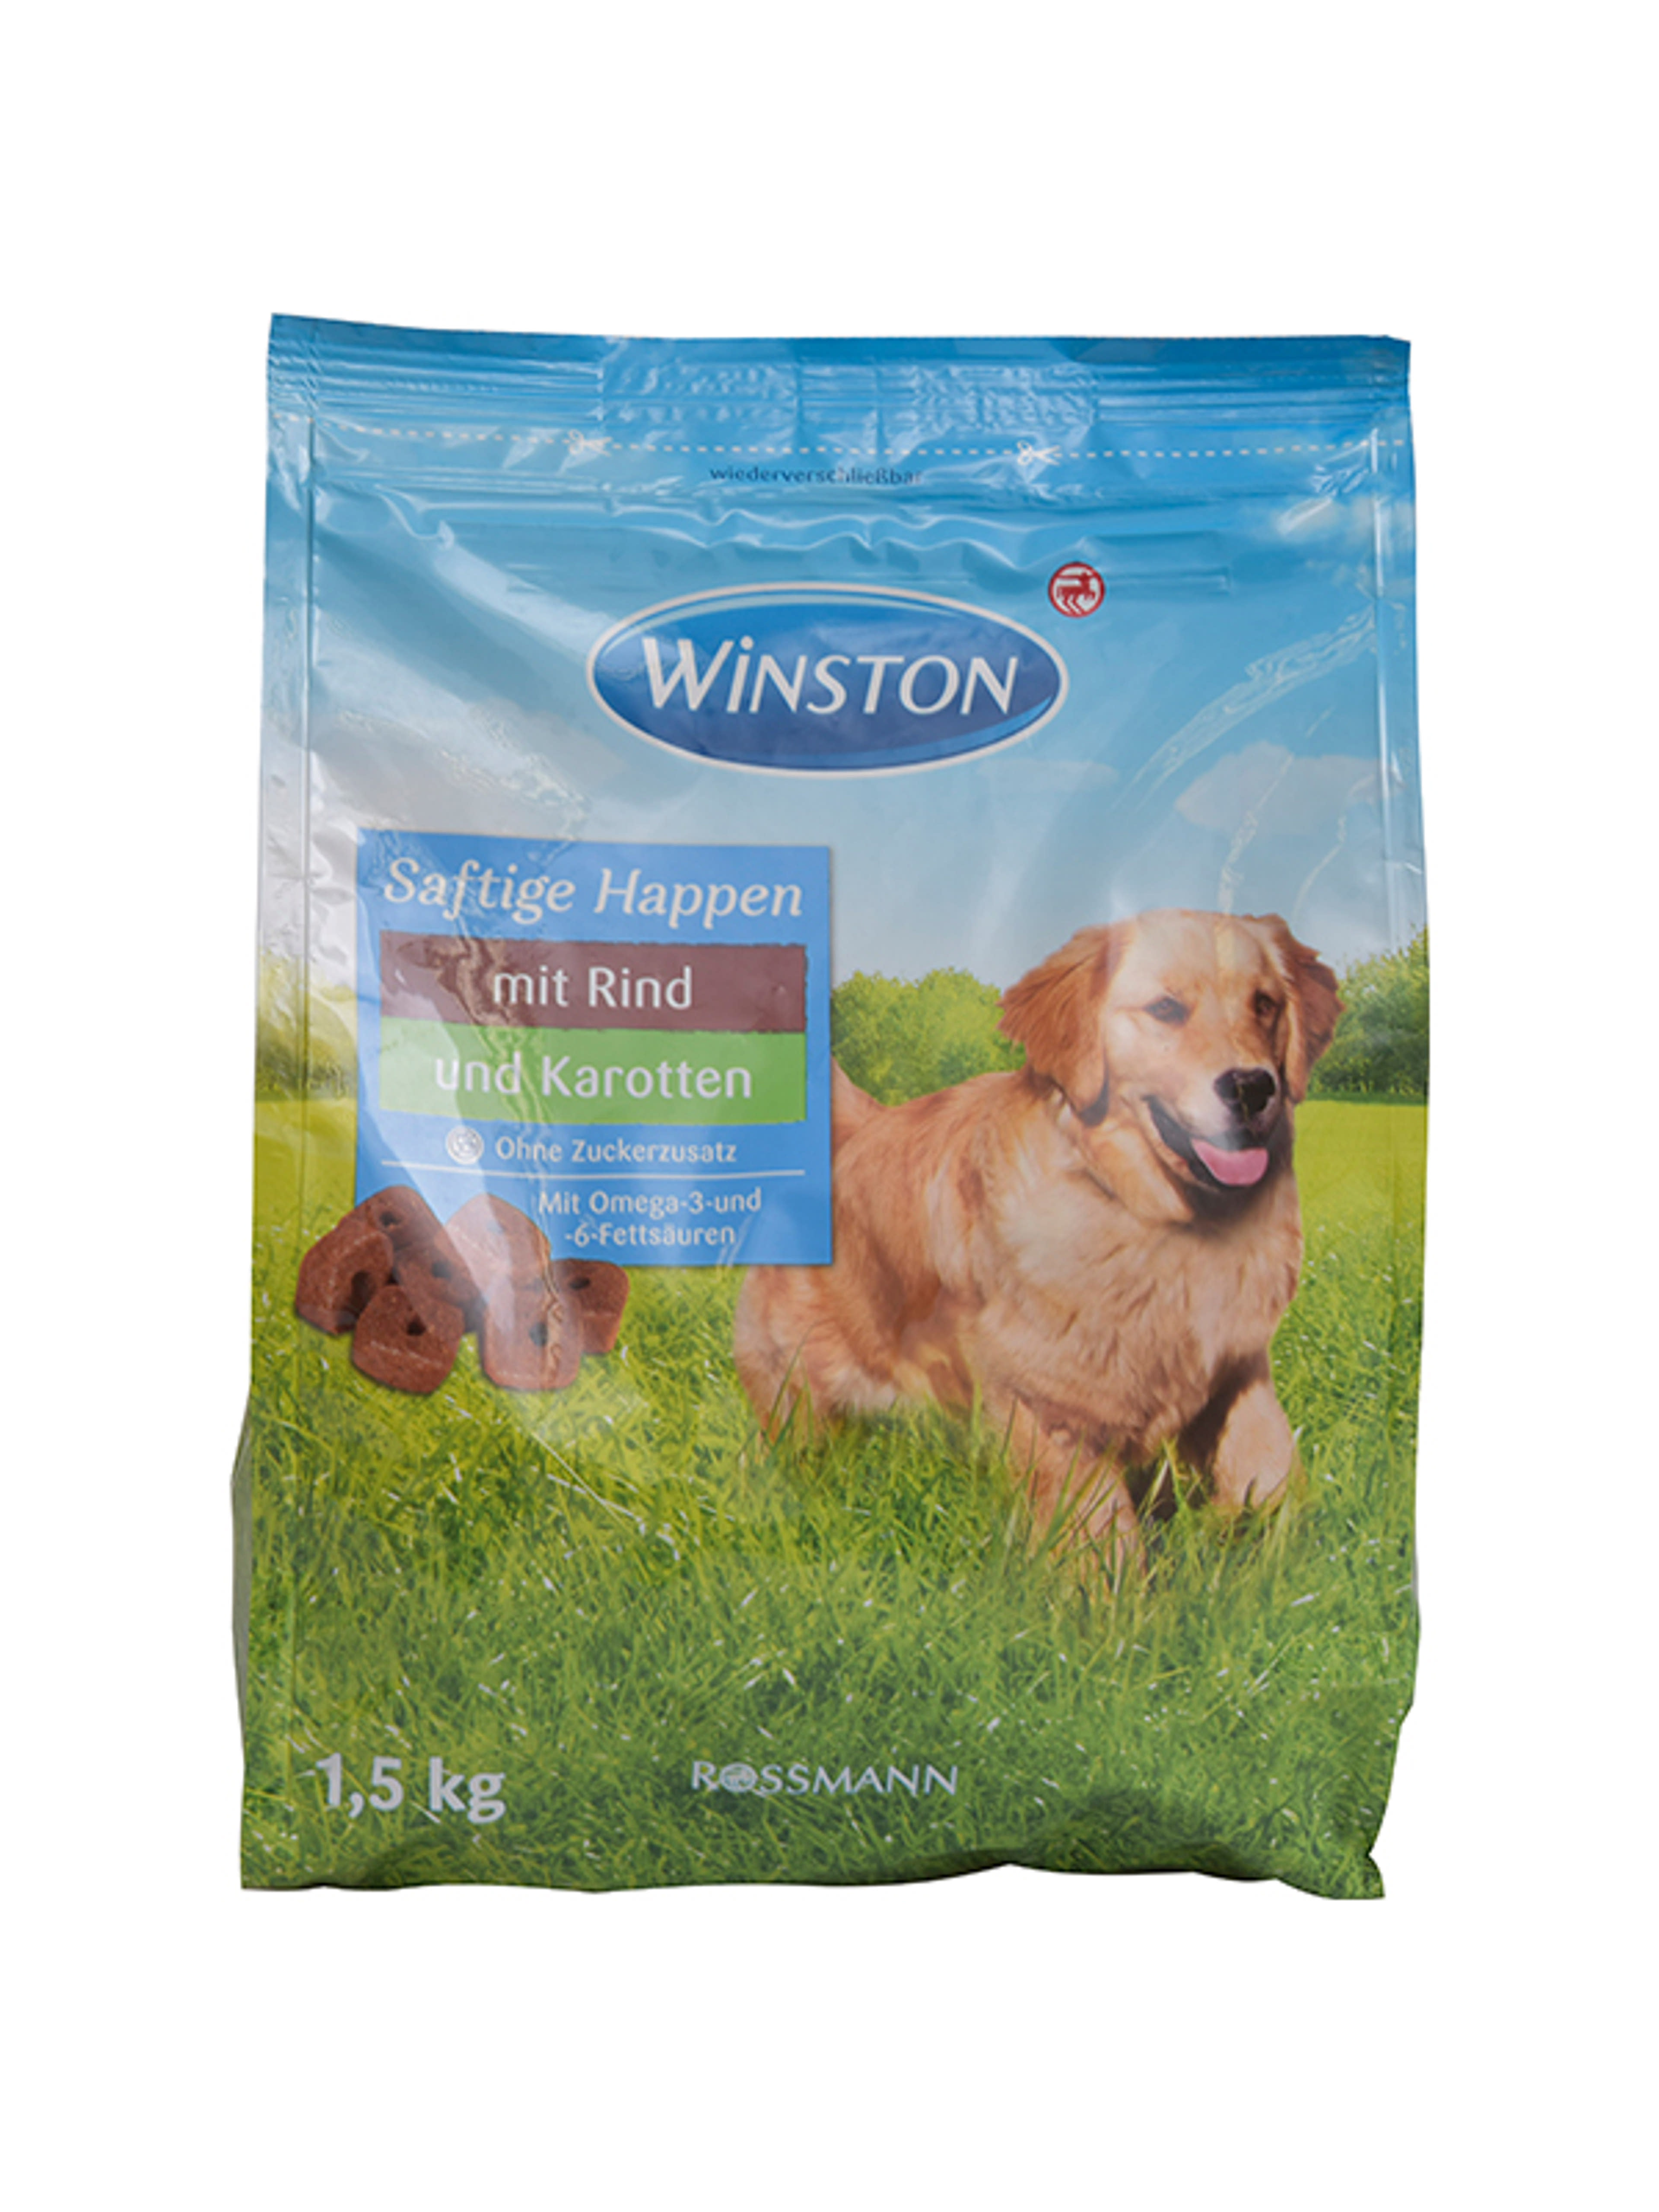 Winston szárazeledel kutyáknak, szaftos falatok - 1,5 kg-1